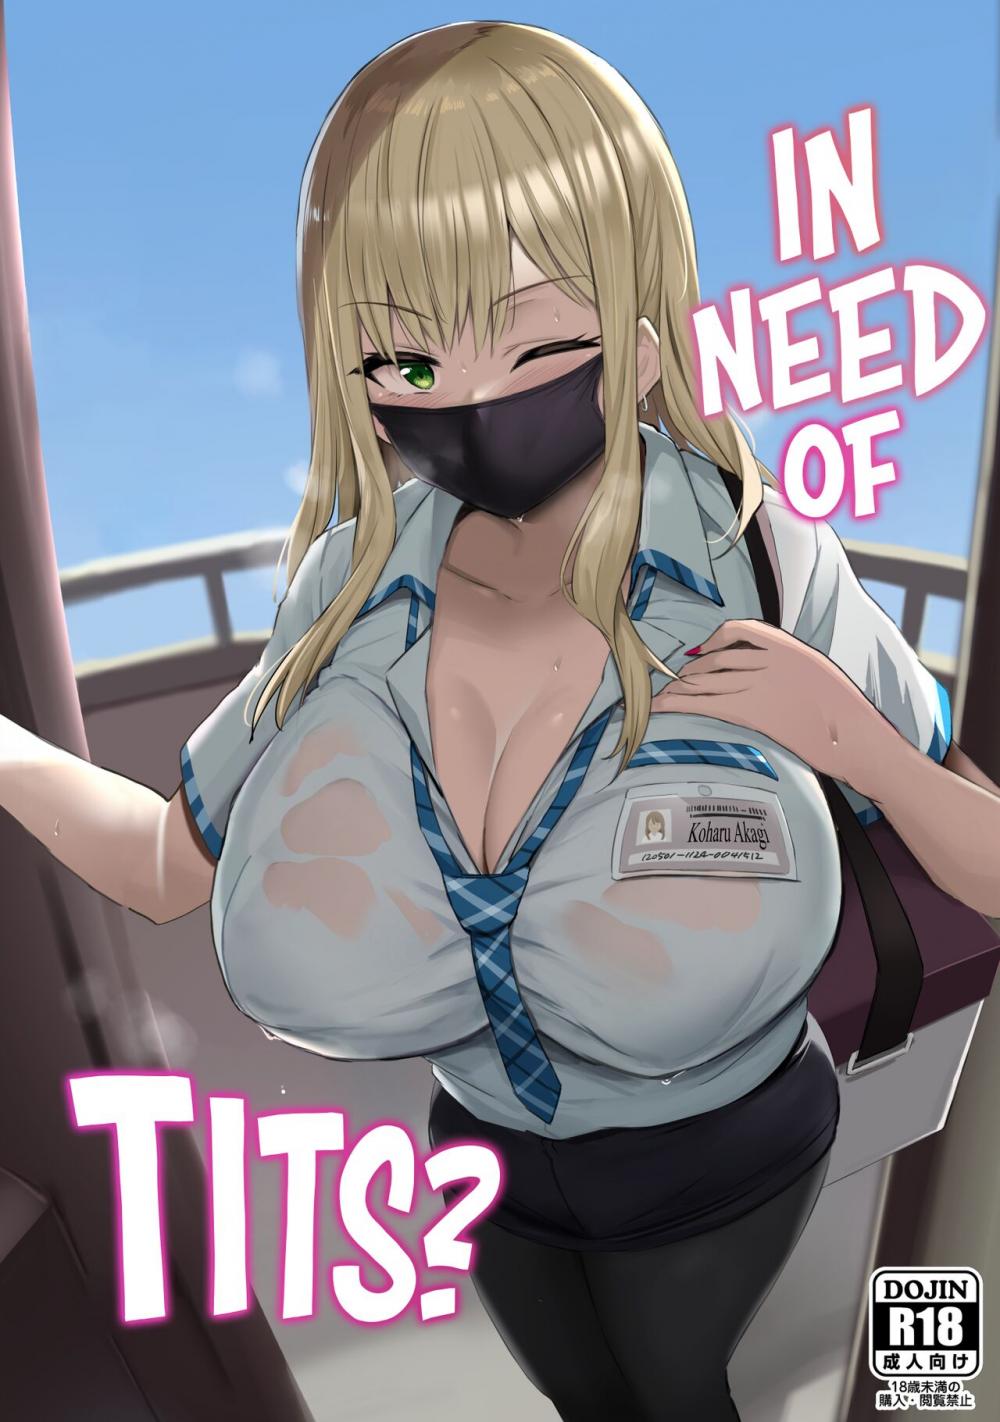 Hentai Manga Comic-In Need of Tits?-Read-1